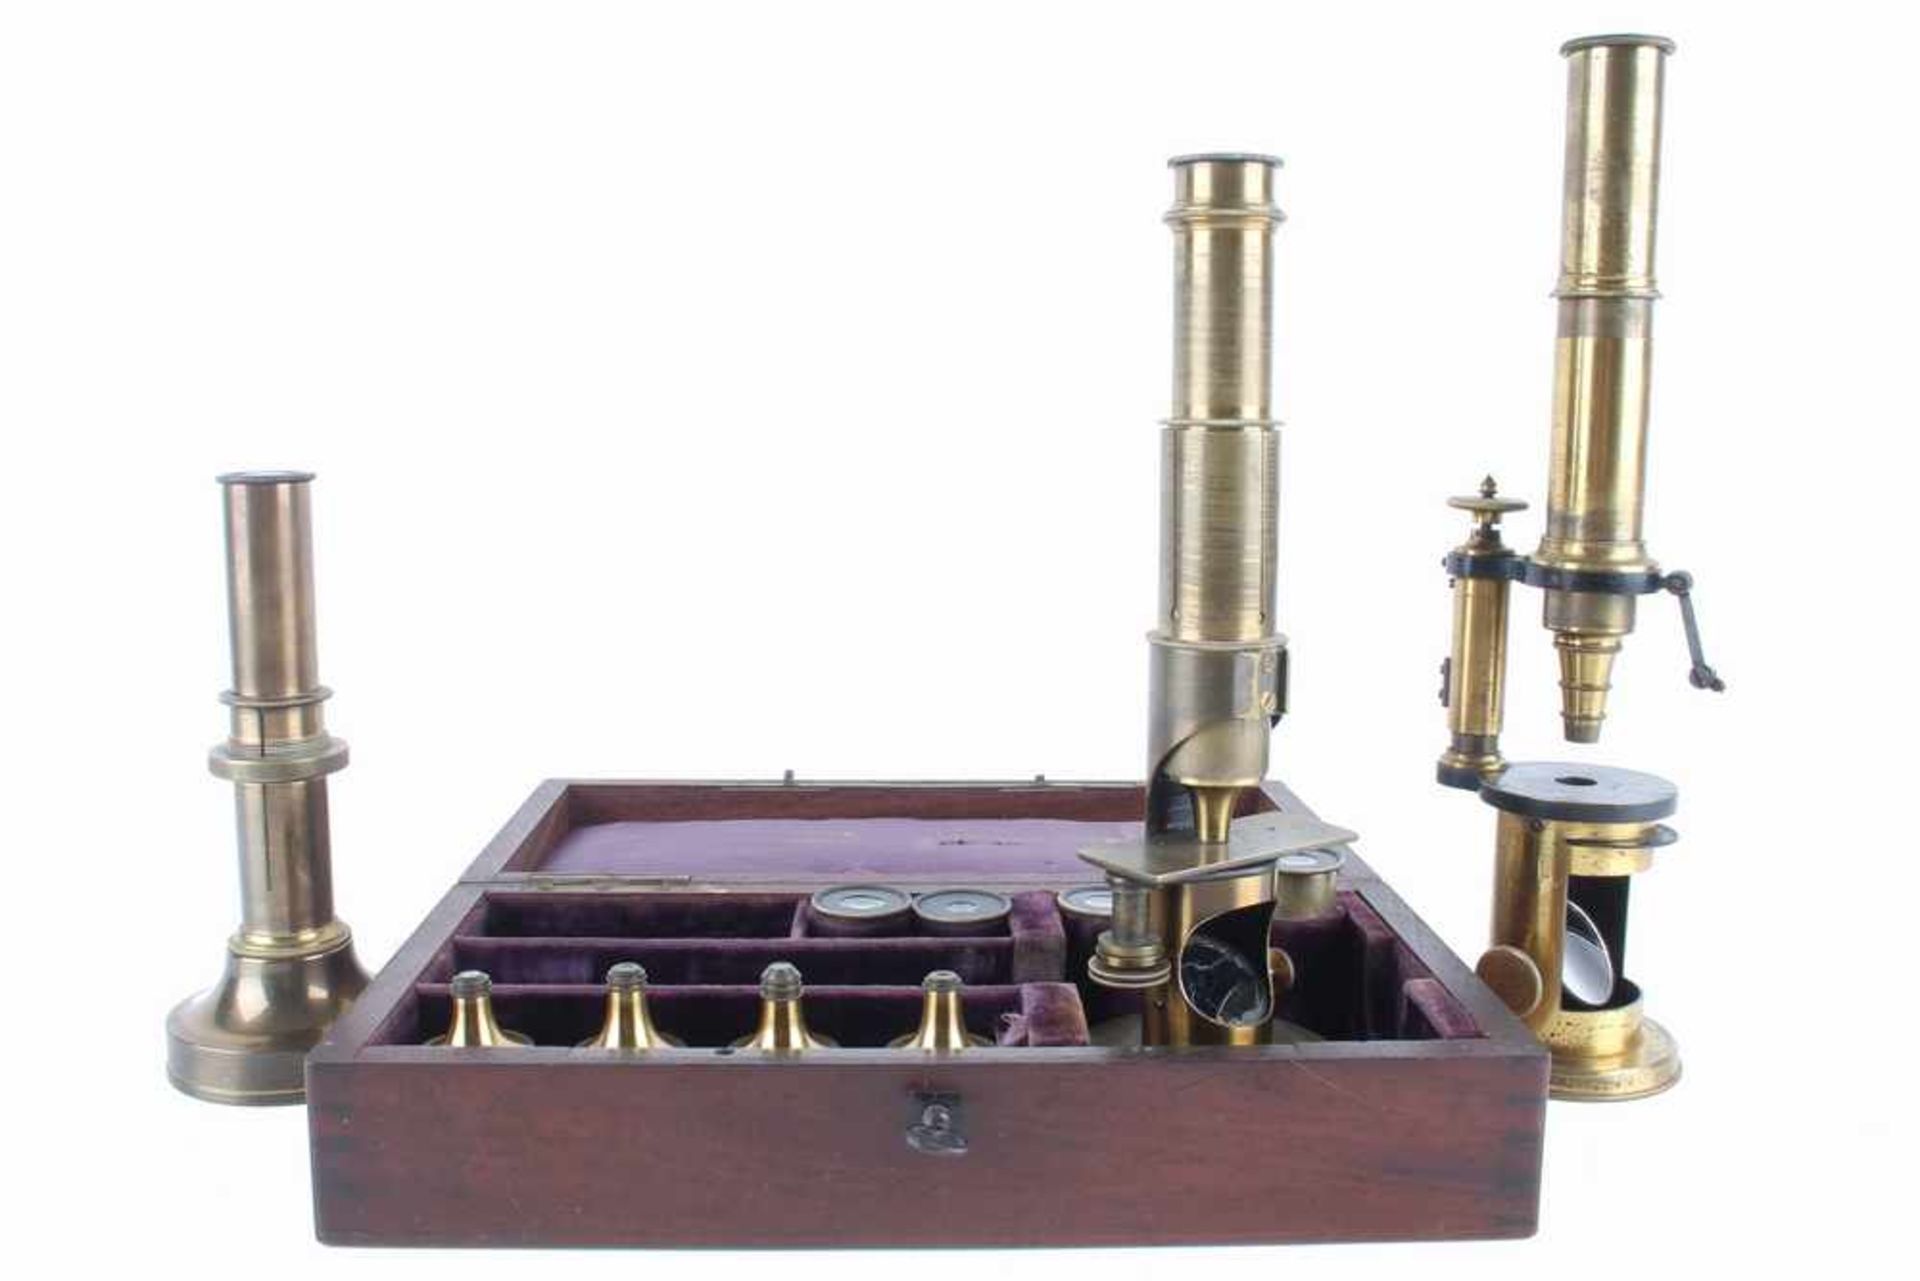 Drei Biedermeier Mikroskope 19. Jahrhundert, Messing, 1 mal im original Holzkasten, 4 zusätzliche